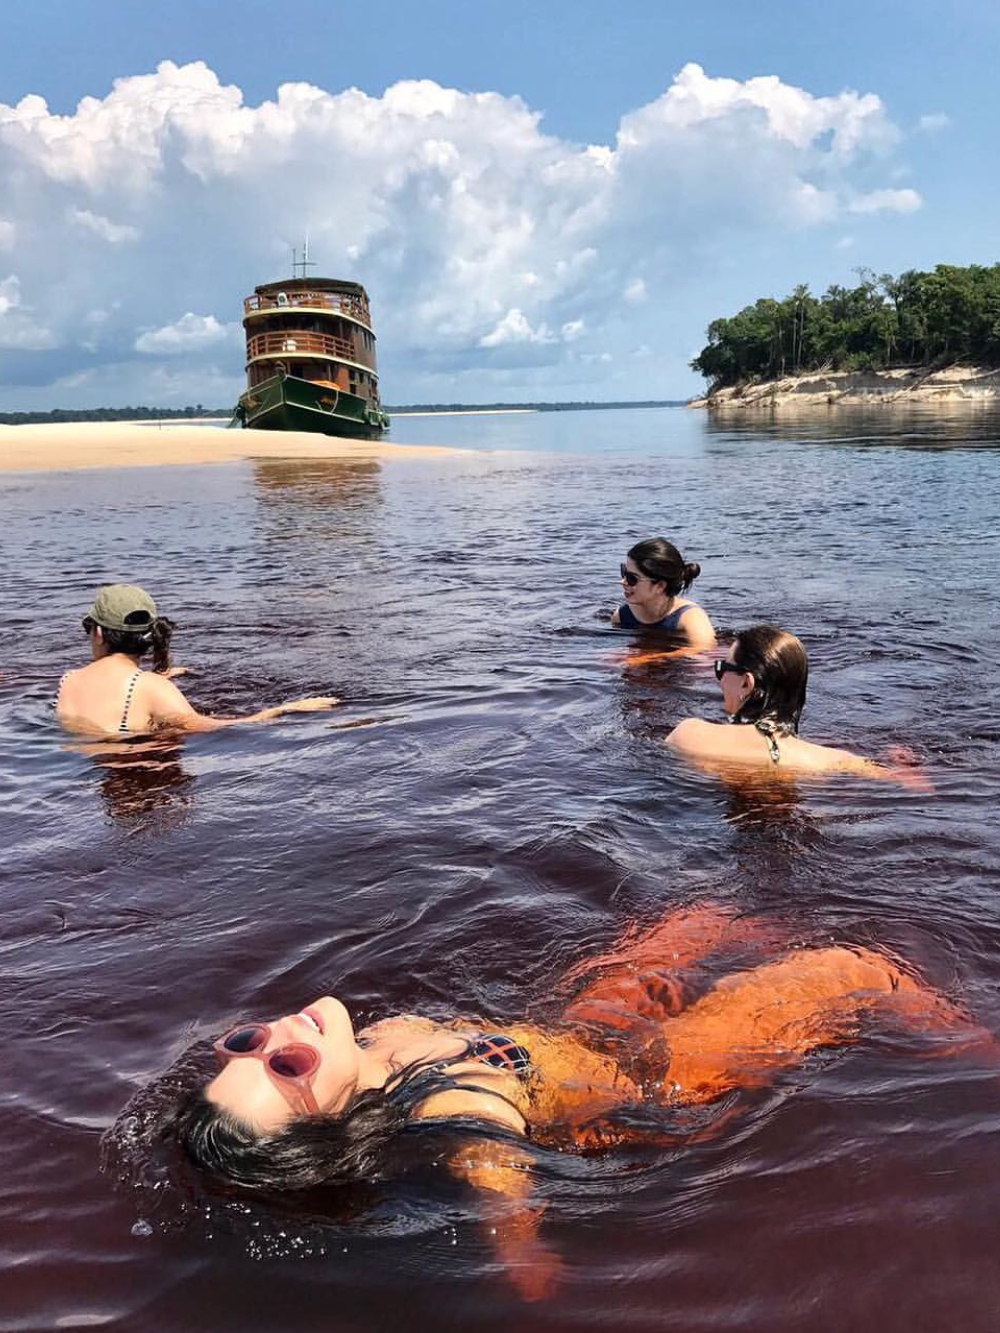 Zwemmen in de rivier in het hart van de Amazone - Brazilië 